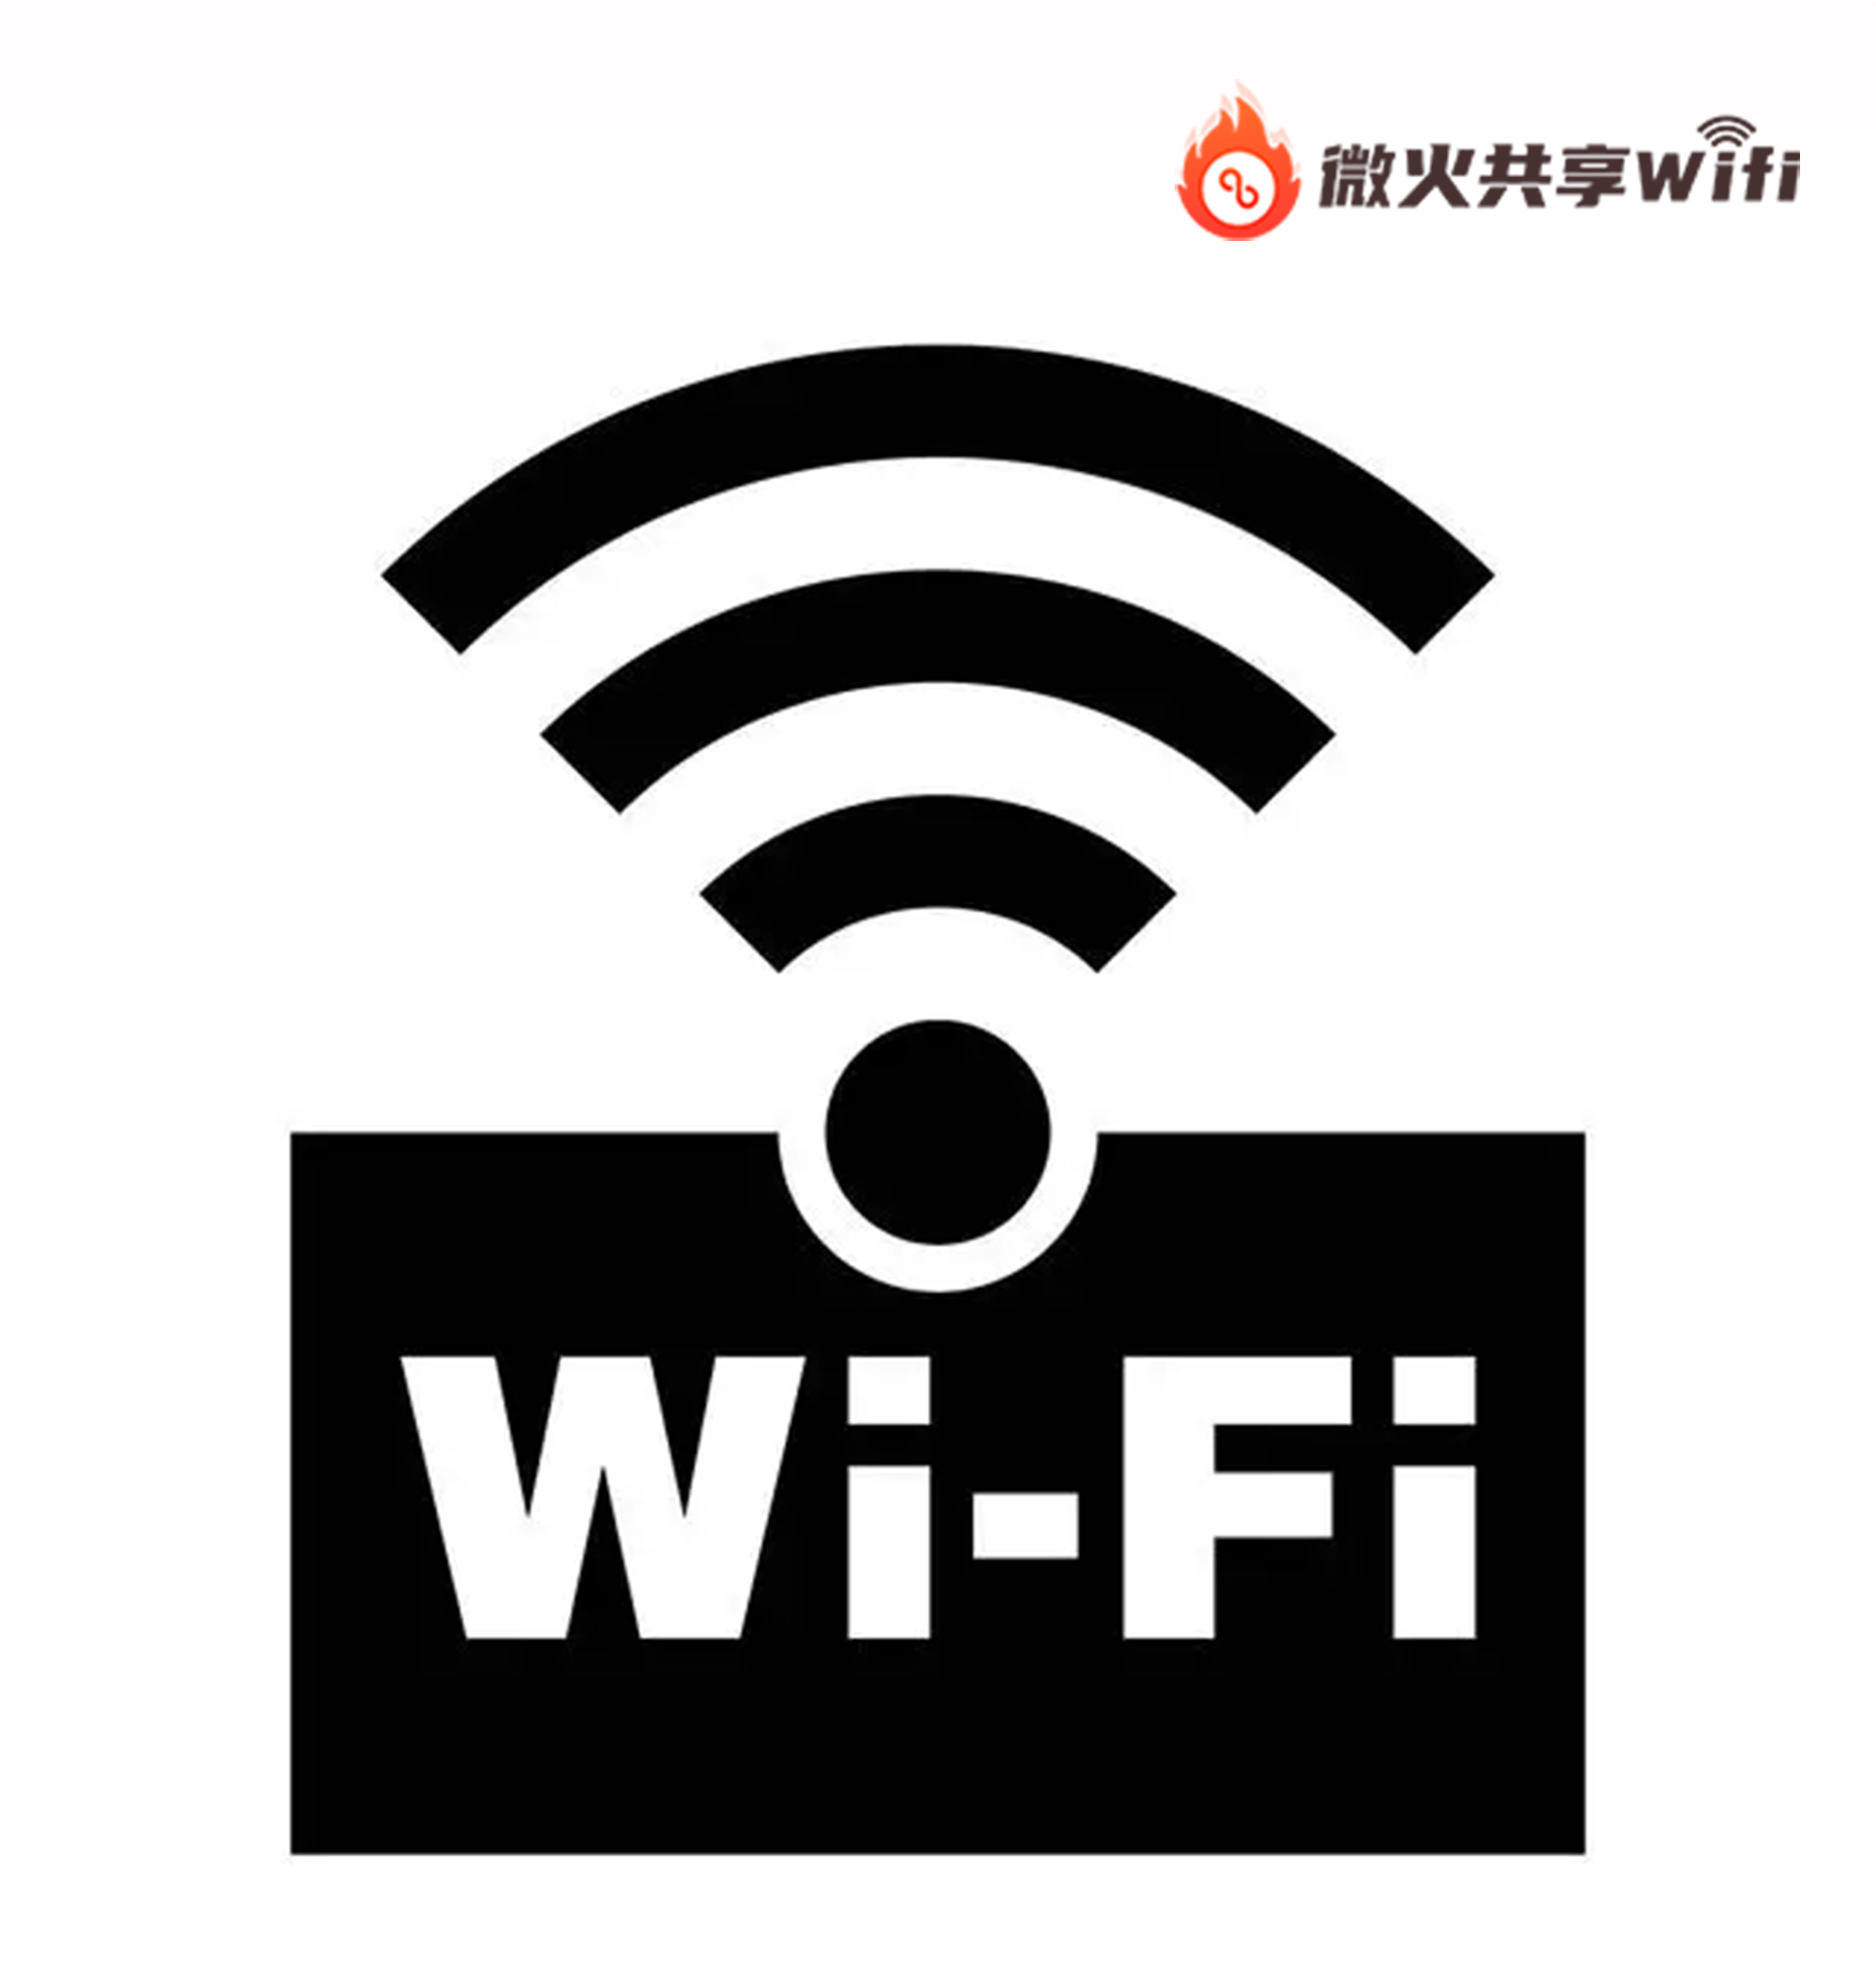 是一张带有wifi二维码的贴纸,它打破了传统wifi需要找到对应无线名称